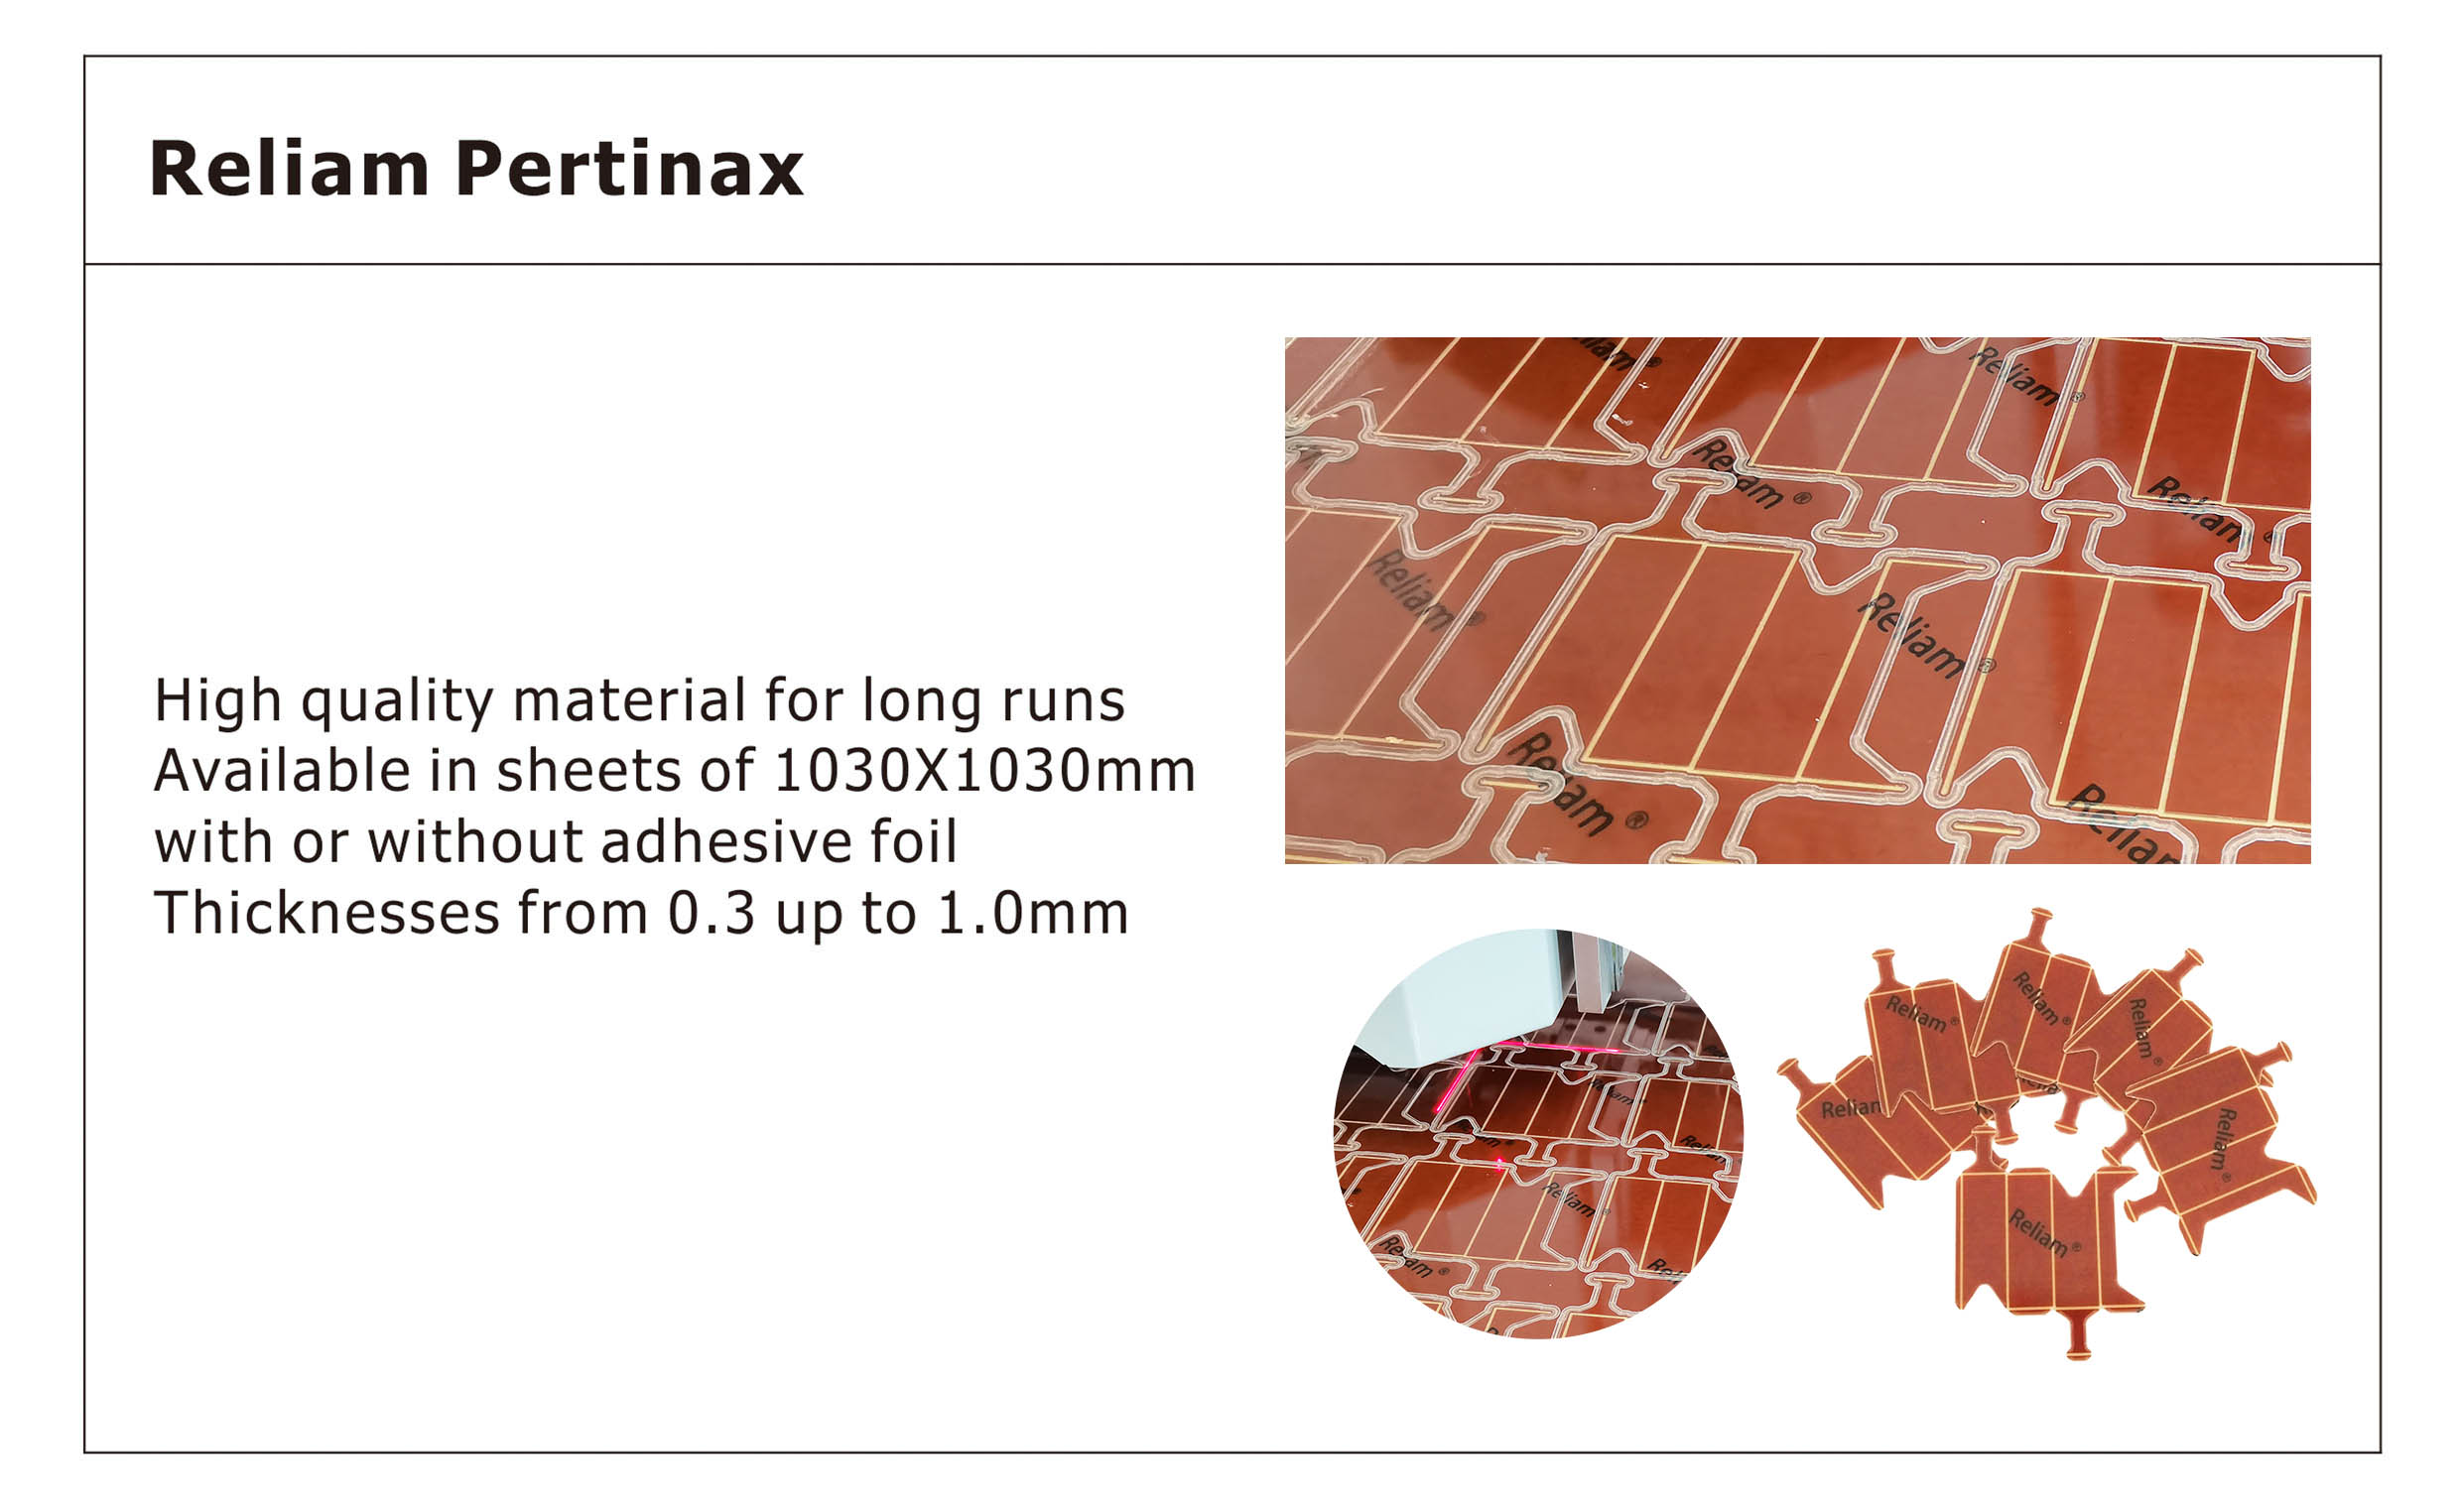 Pertinax material